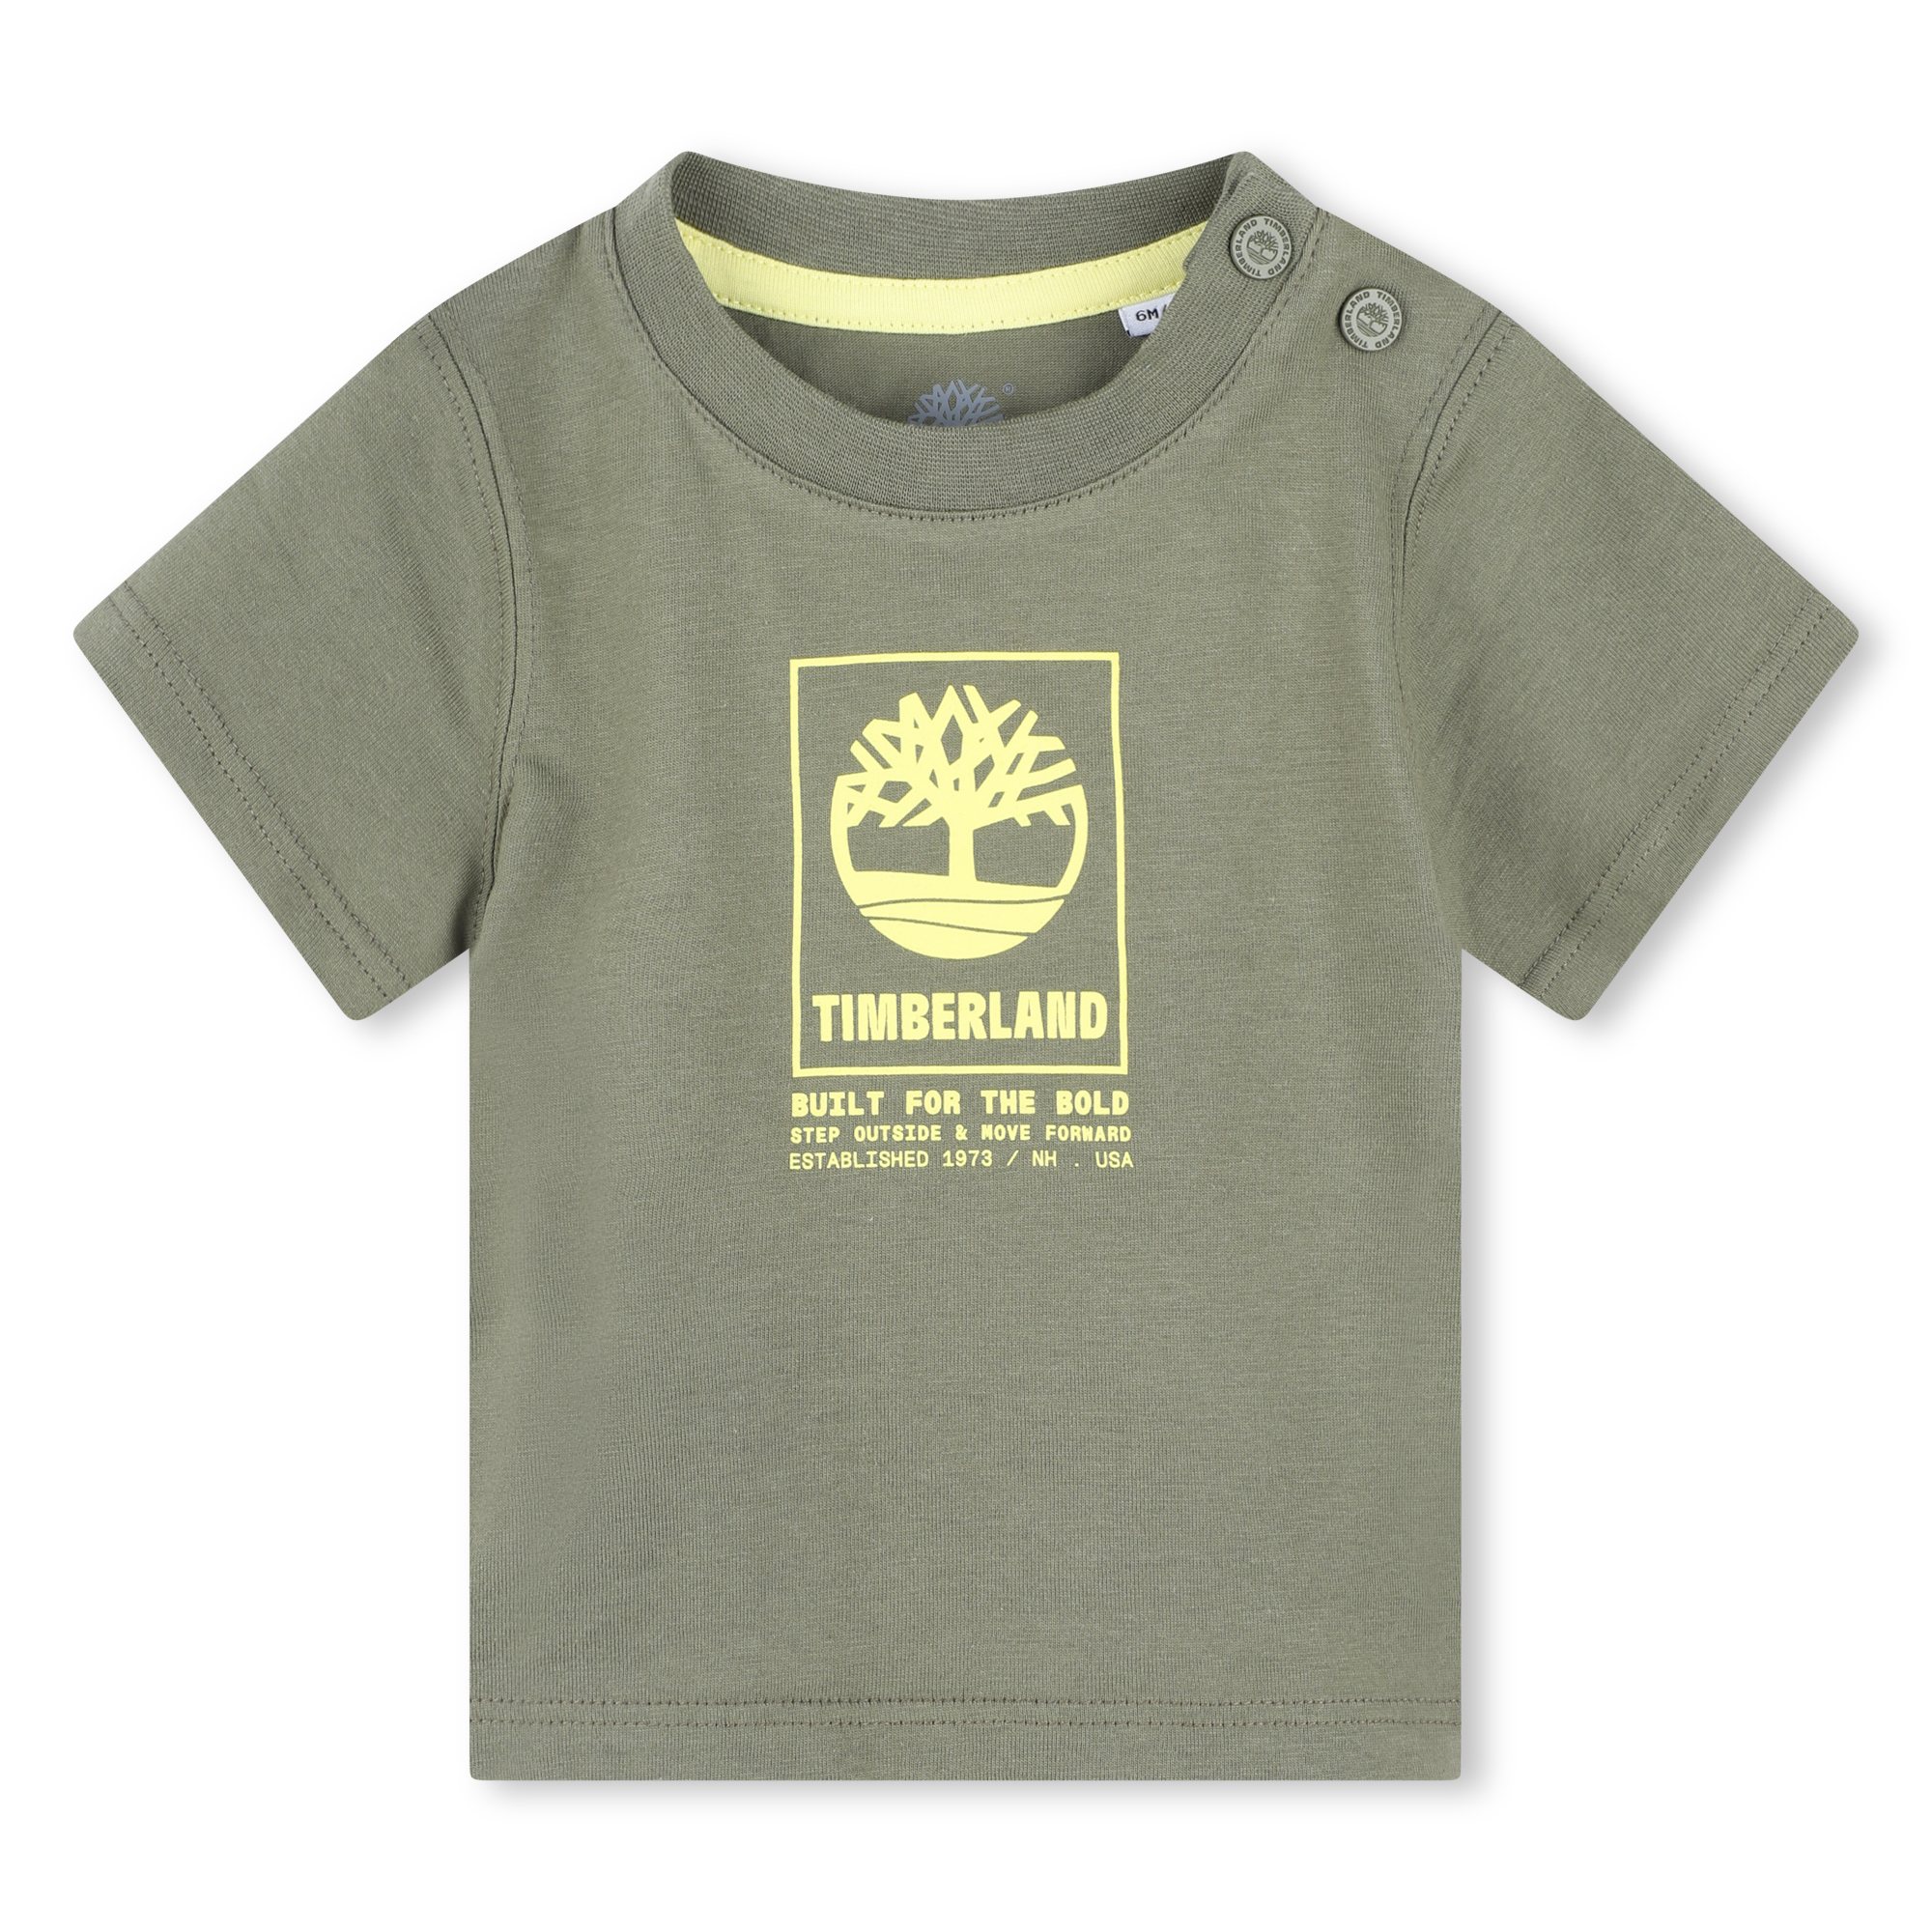 Katoenen T-shirt (drukknopen) TIMBERLAND Voor